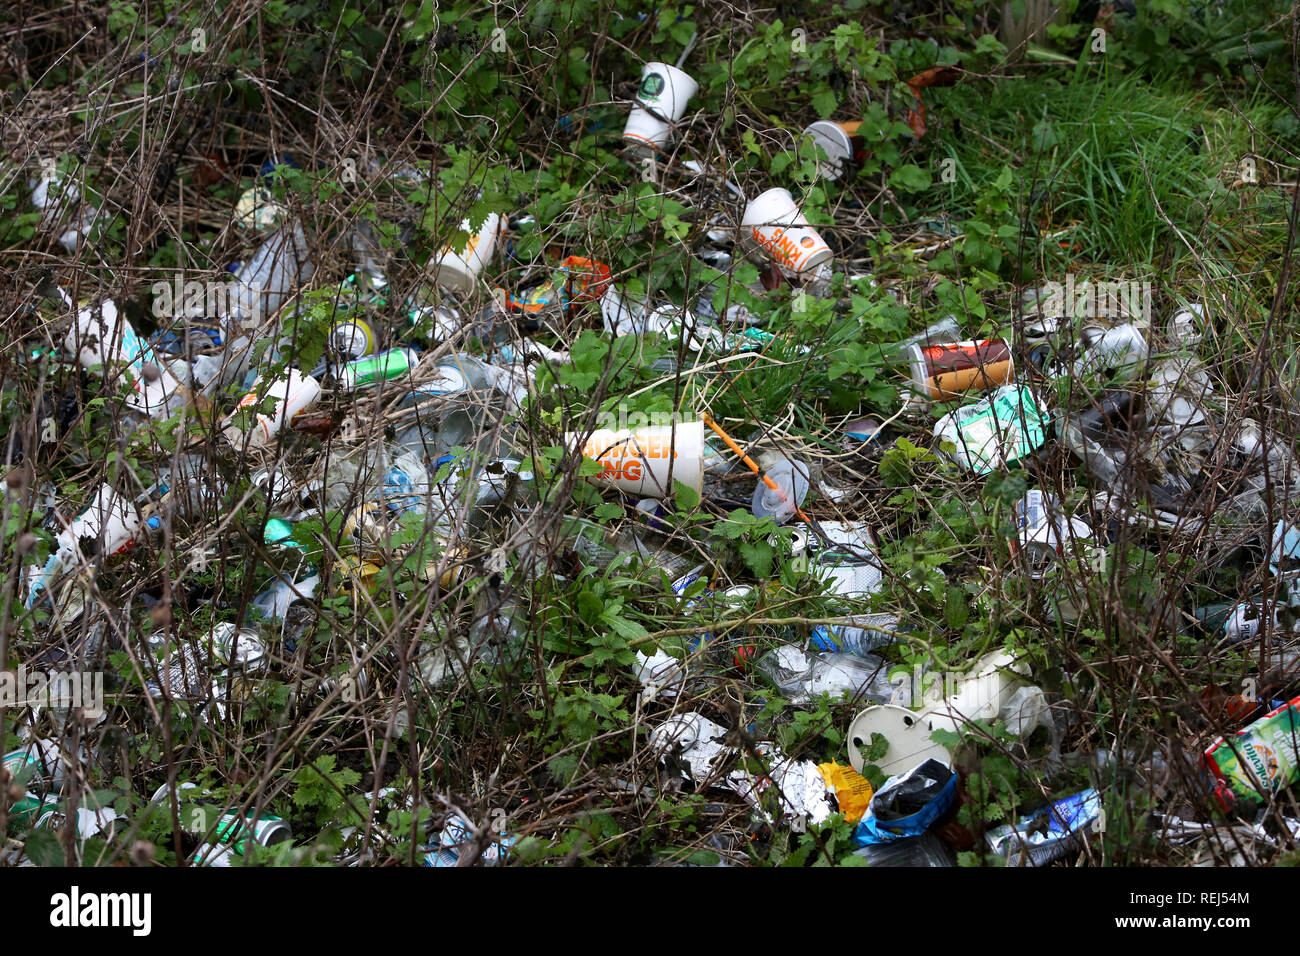 Allgemeine Ansicht, und Burger King Single Use trinken Karton zusammen mit anderen Abfällen und Müll am Flussufer in Chichester, West Sussex, UK. Stockfoto